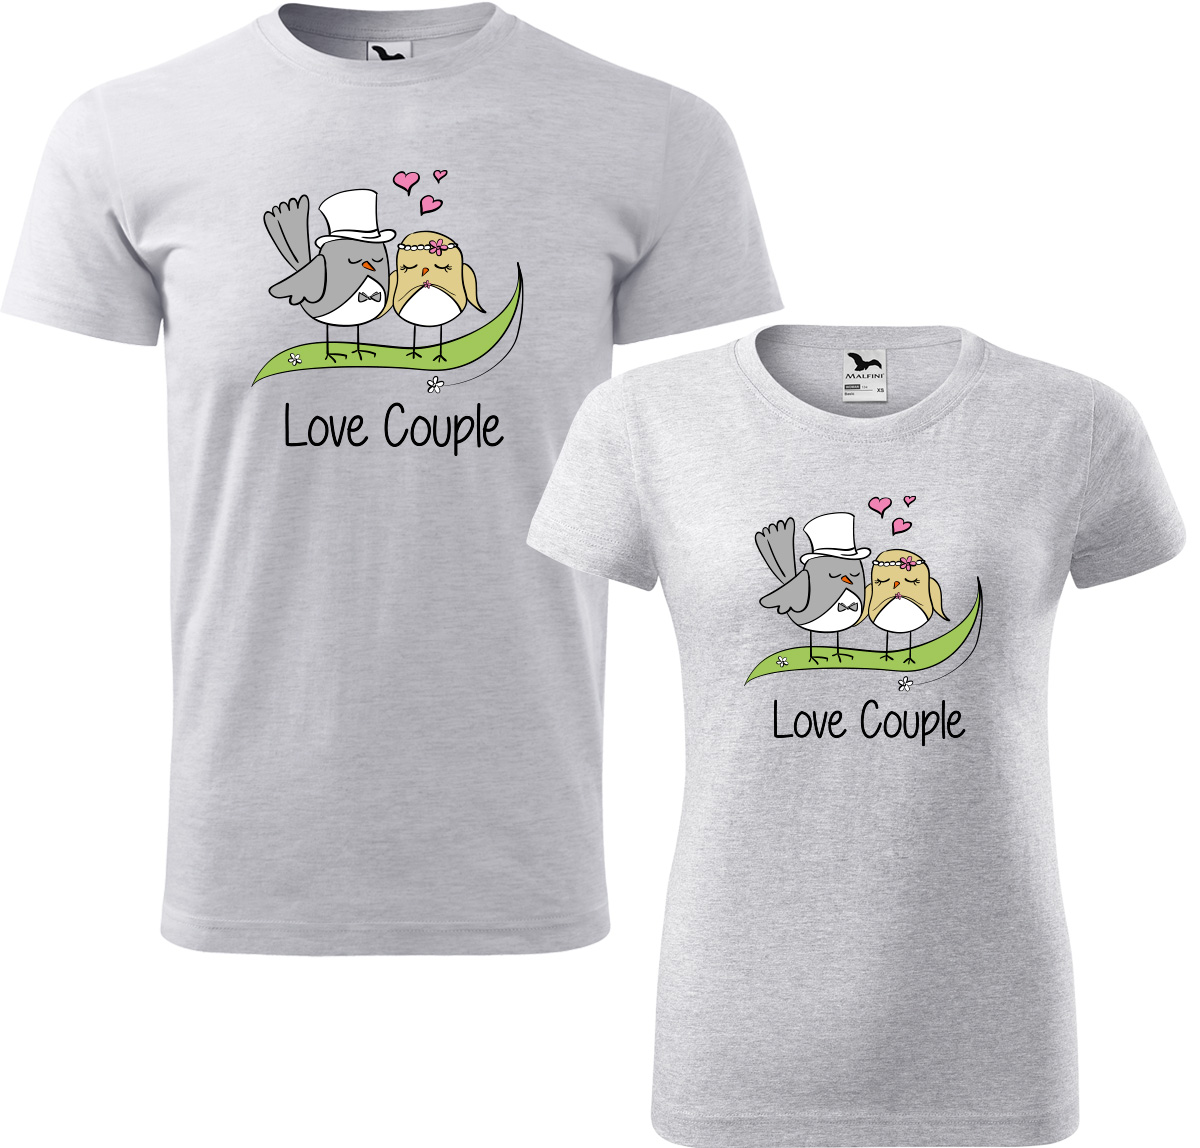 Trička pro páry - Love couple Barva: Světle šedý melír (03), Velikost dámské tričko: XL, Velikost pánské tričko: XL